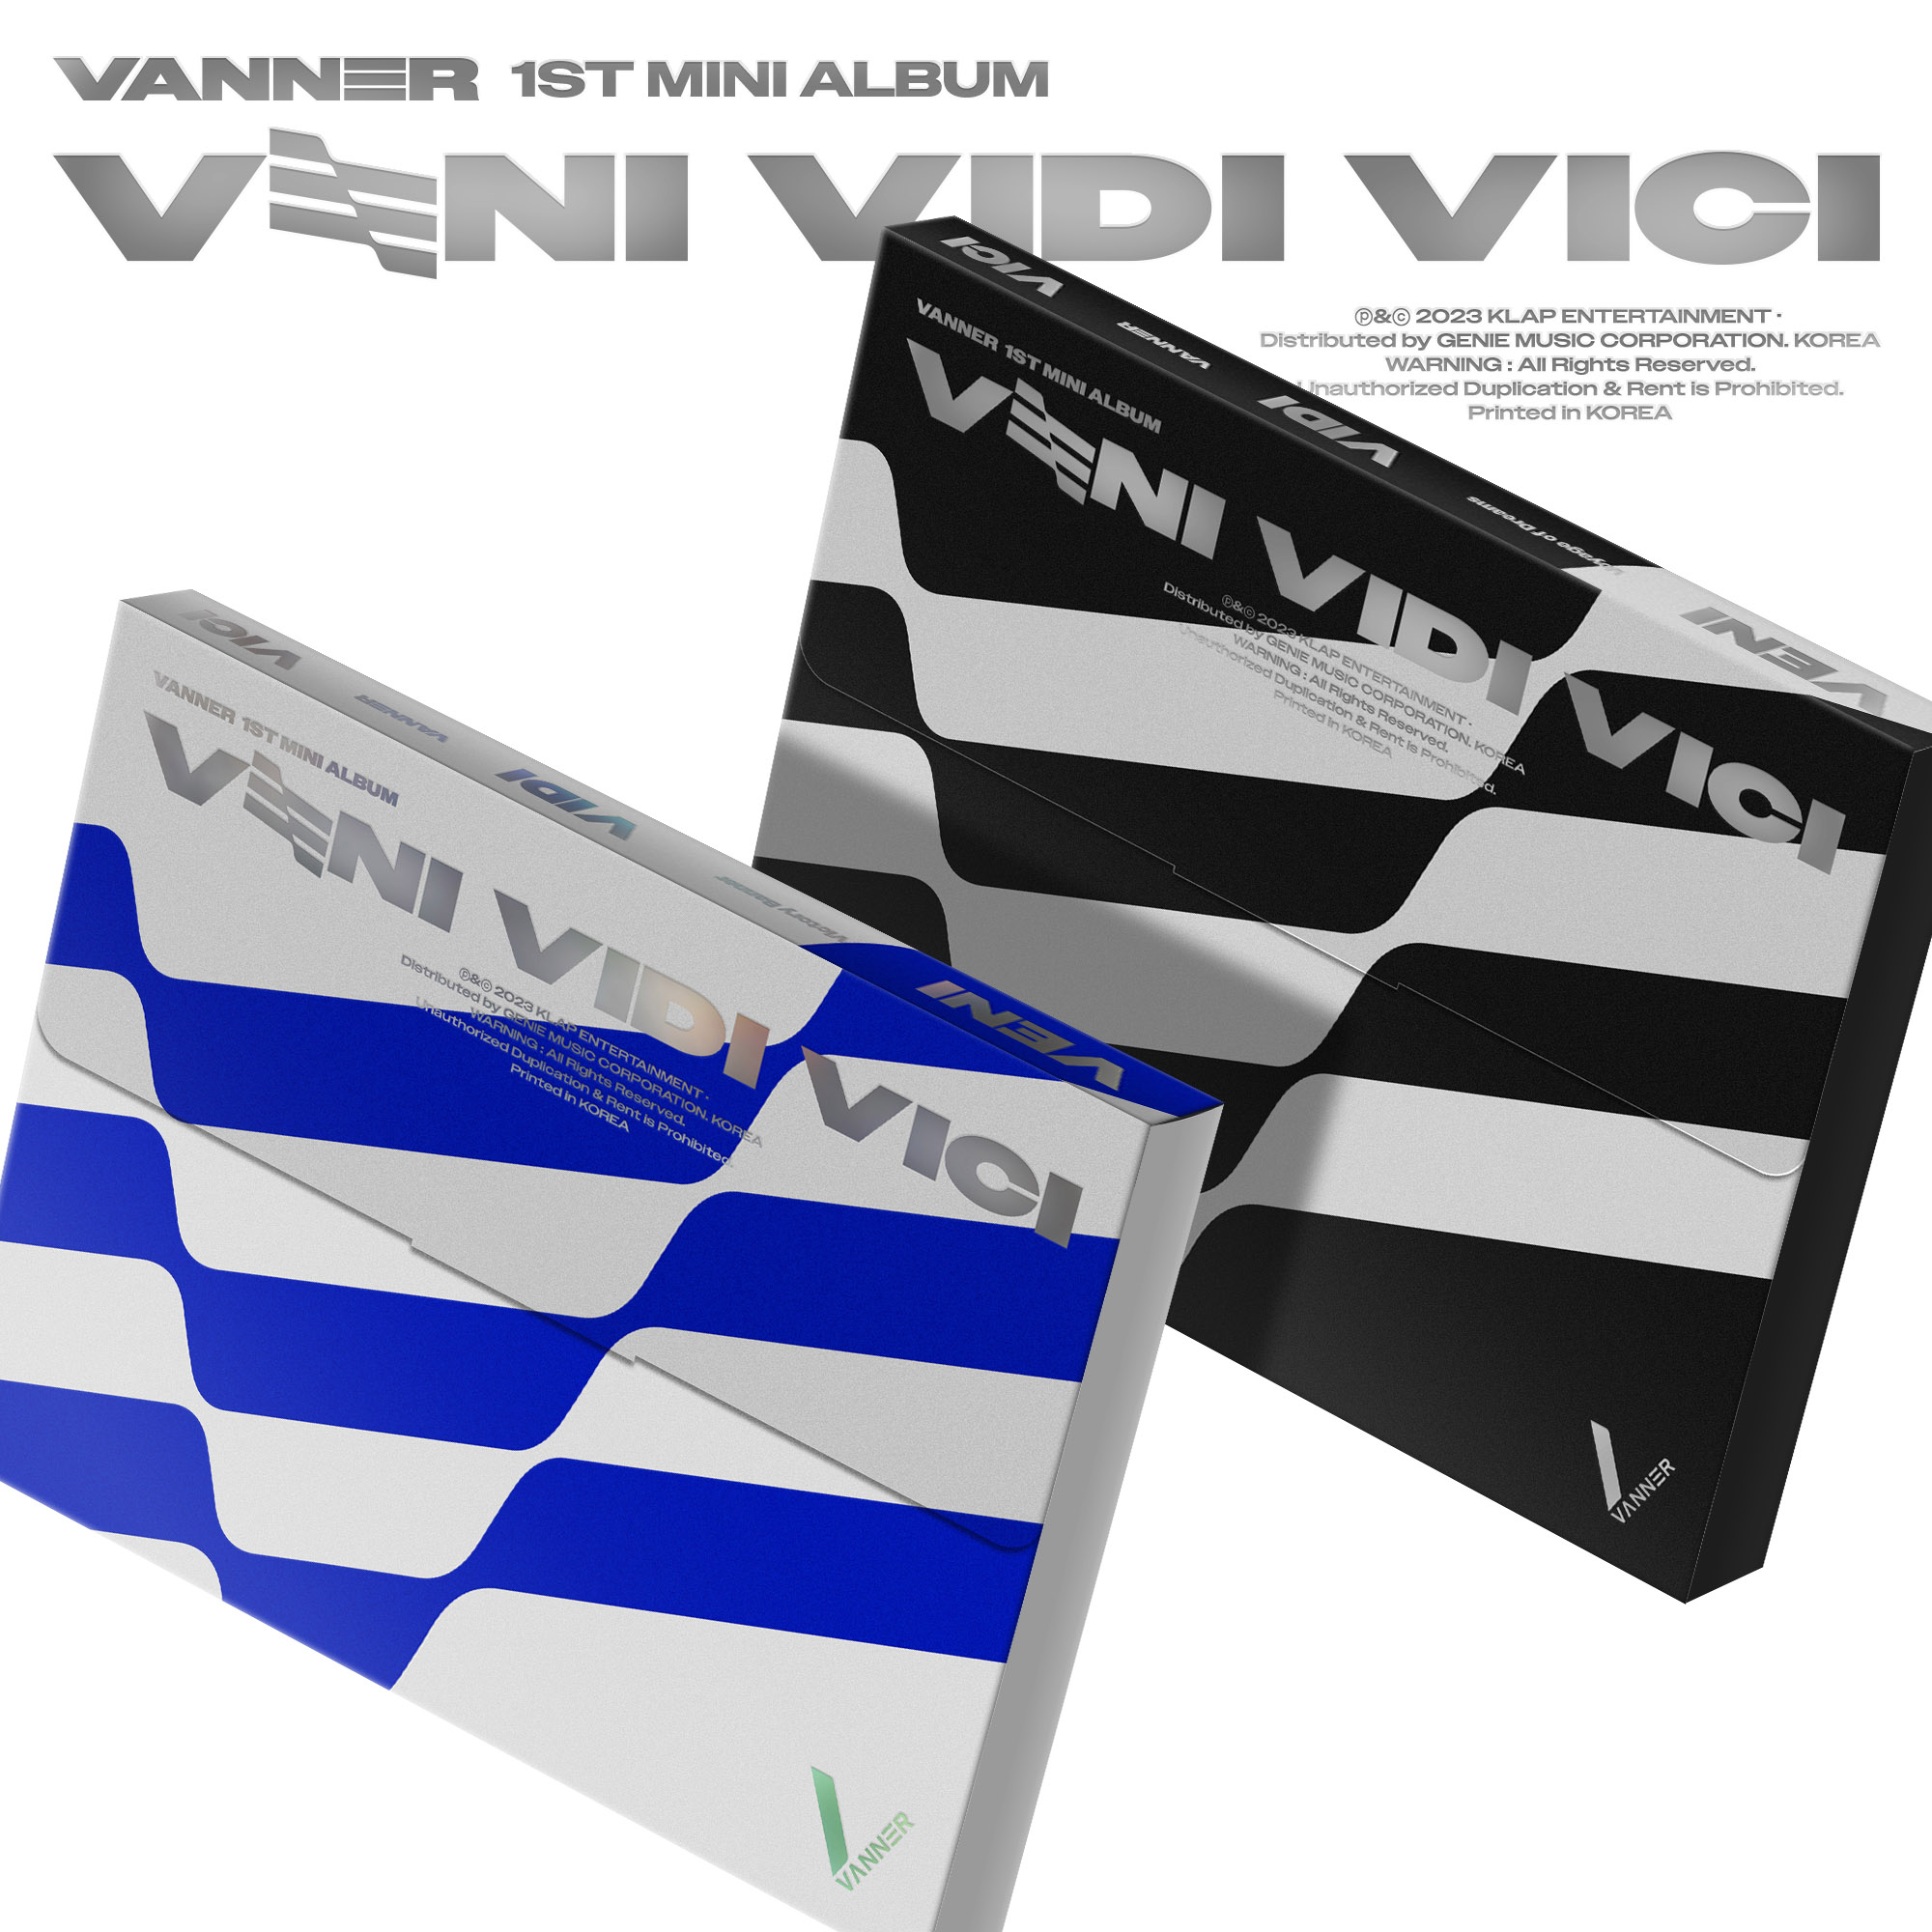 [全款 裸专] [Ktown4u Special Gift] [2CD 套装] VANNER - 迷你1辑 [VENI VIDI VICI] (Victory Banner Ver. + Voyage of Dreams Ver.)_VANNER_Iridescent